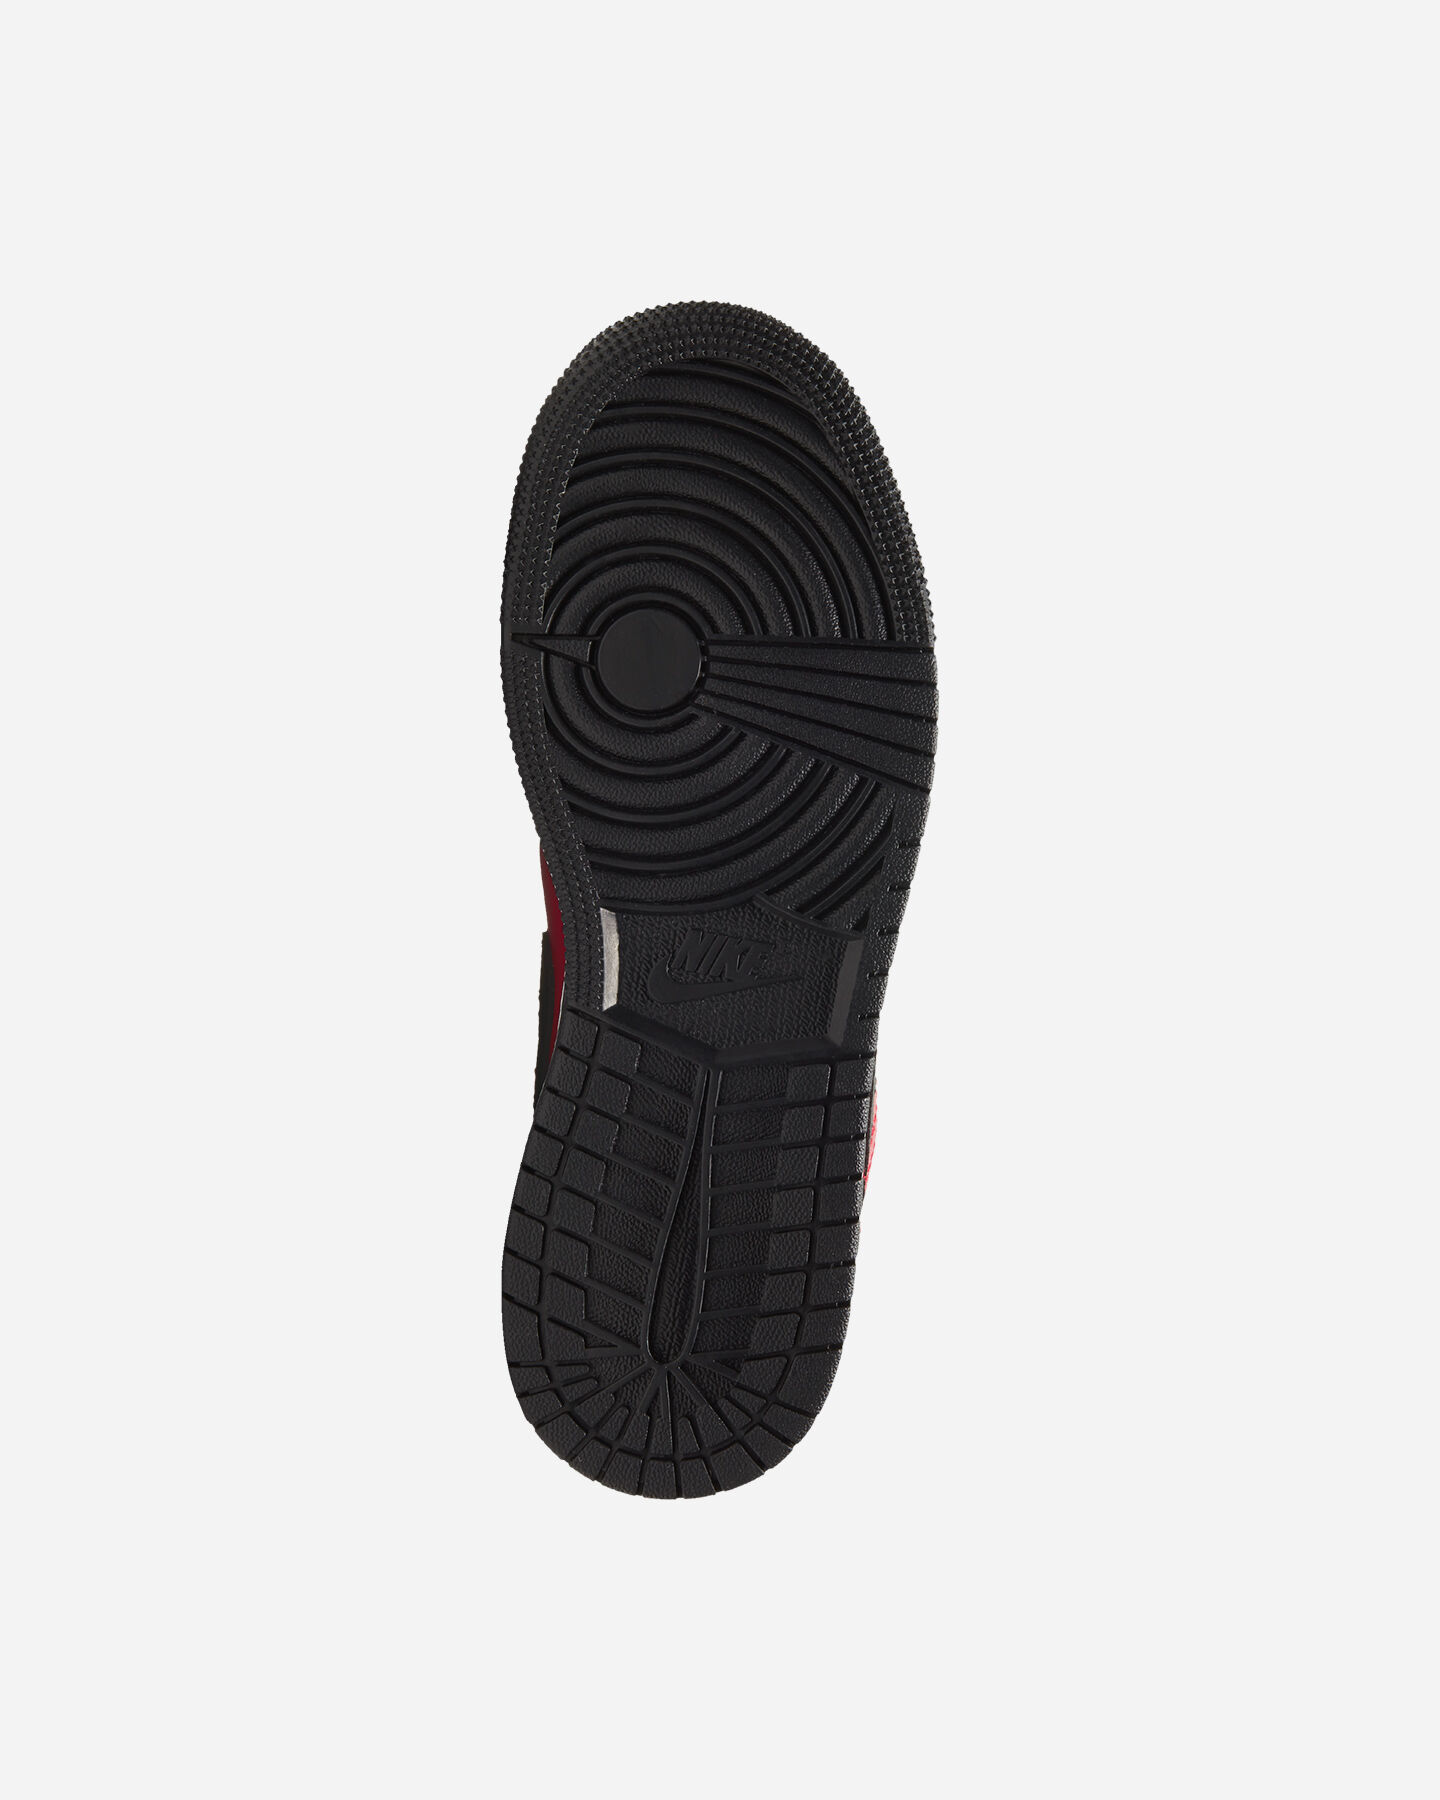  Scarpe sneakers NIKE AIR JORDAN 1 LOW GS JR S5270339|605|3.5Y scatto 2